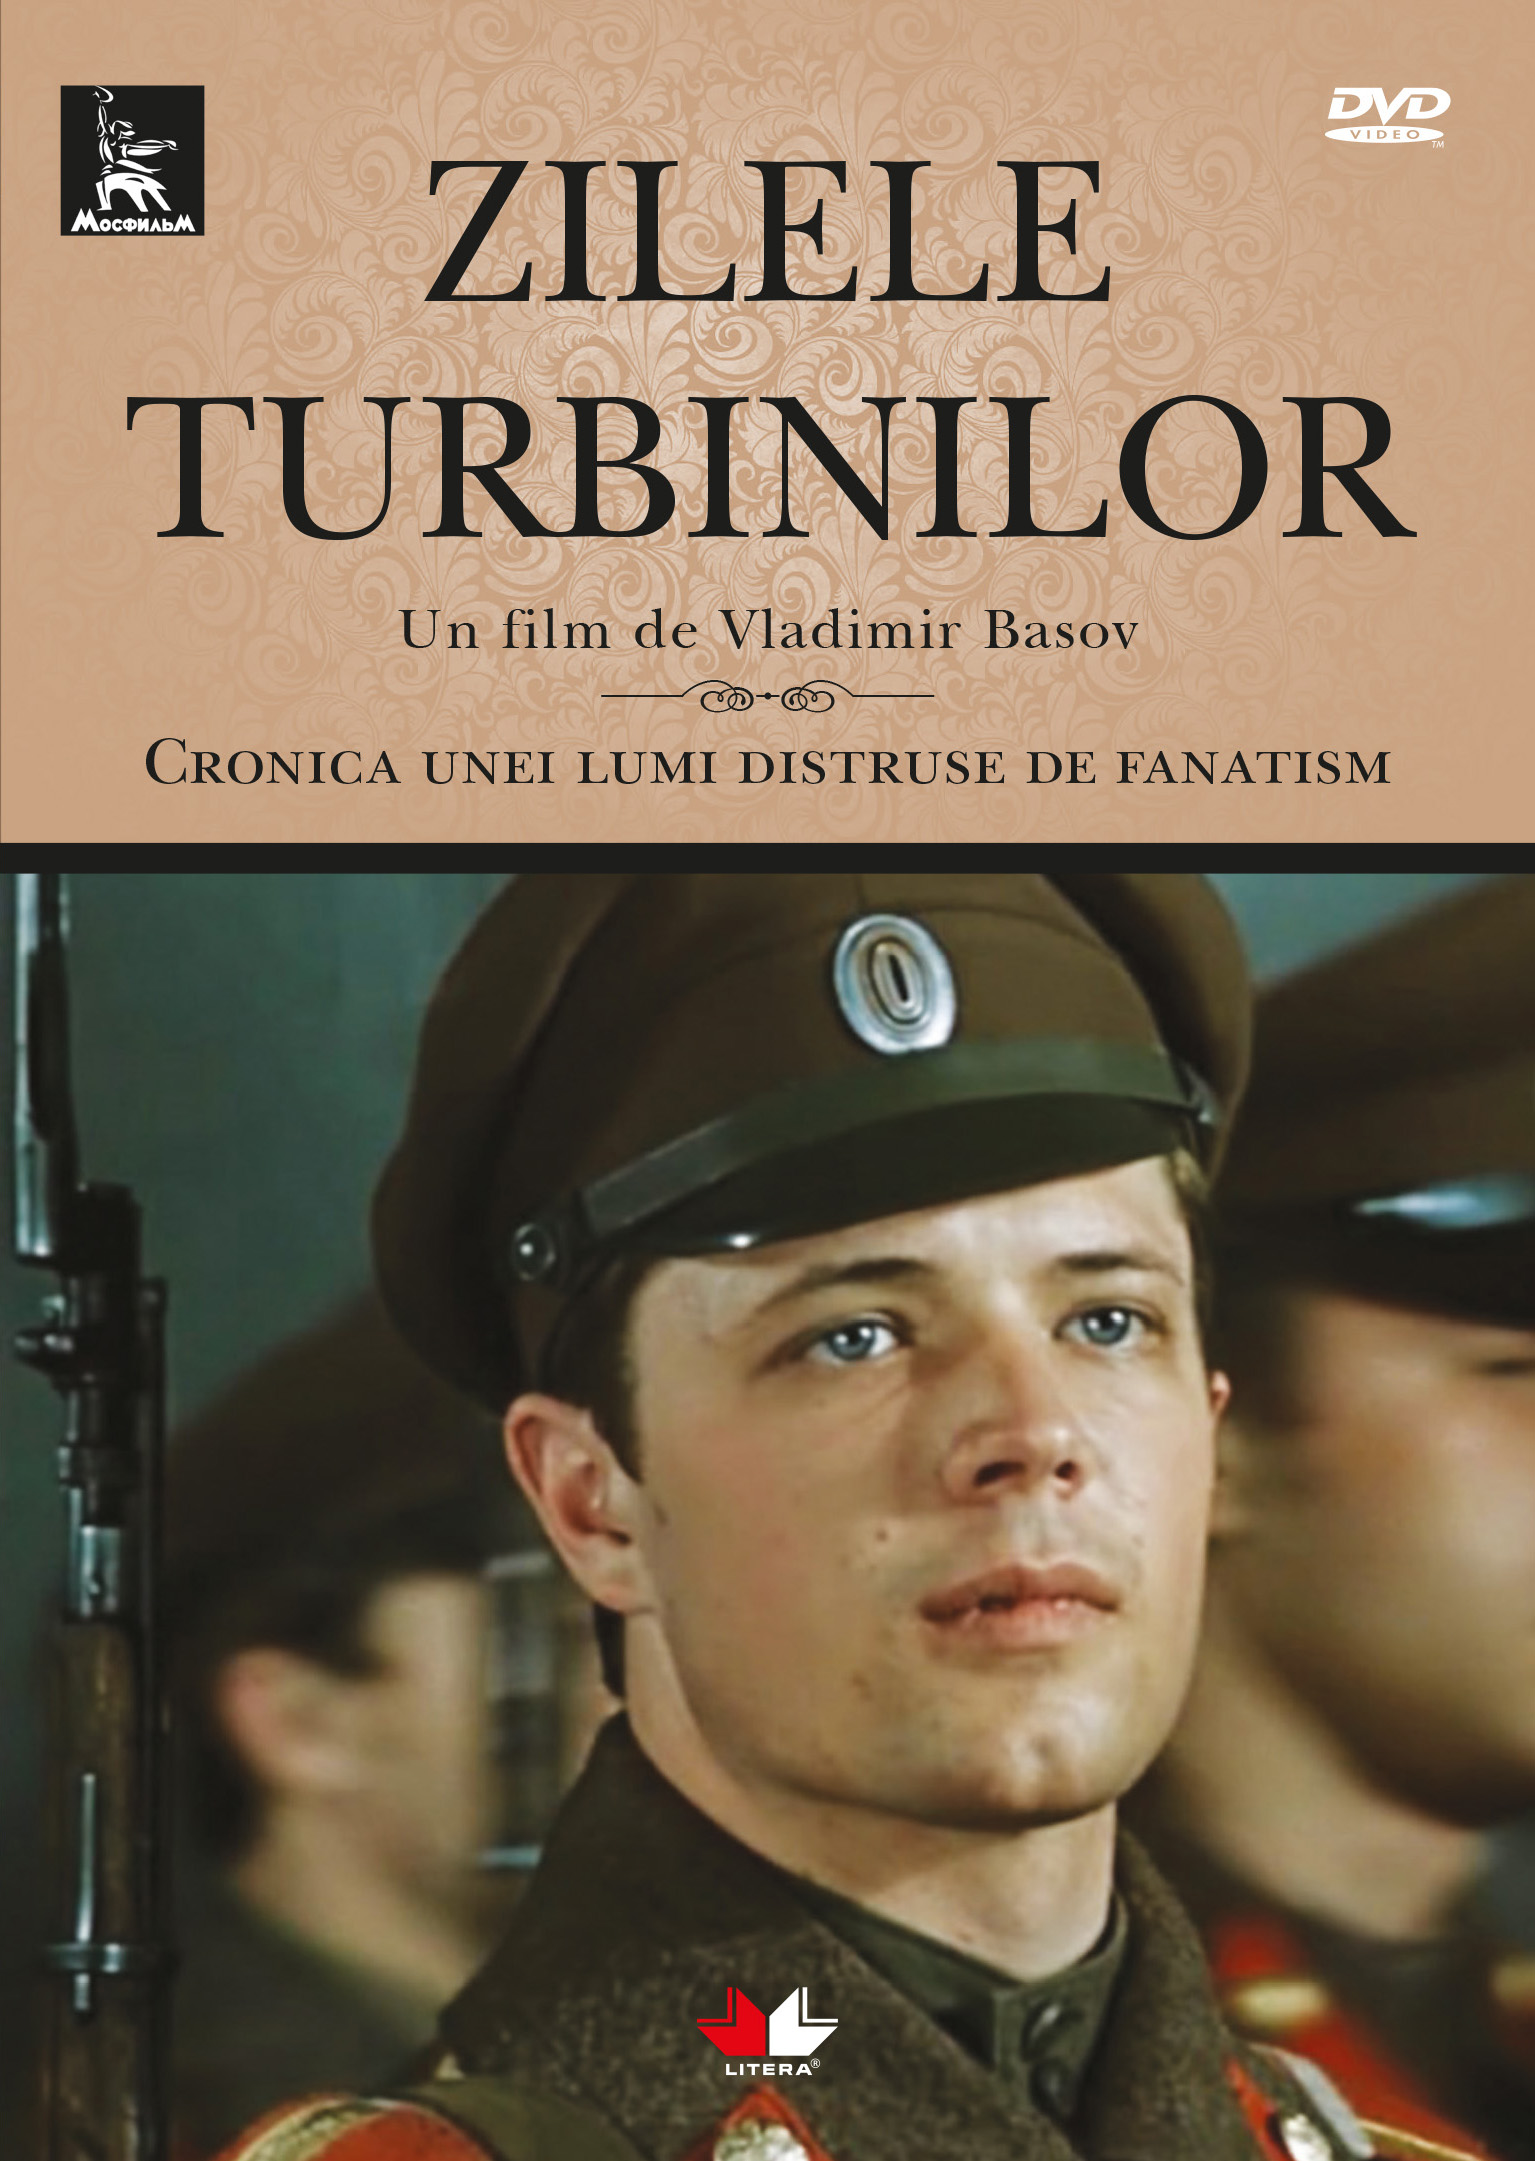 DVD Zilele Turbinilor